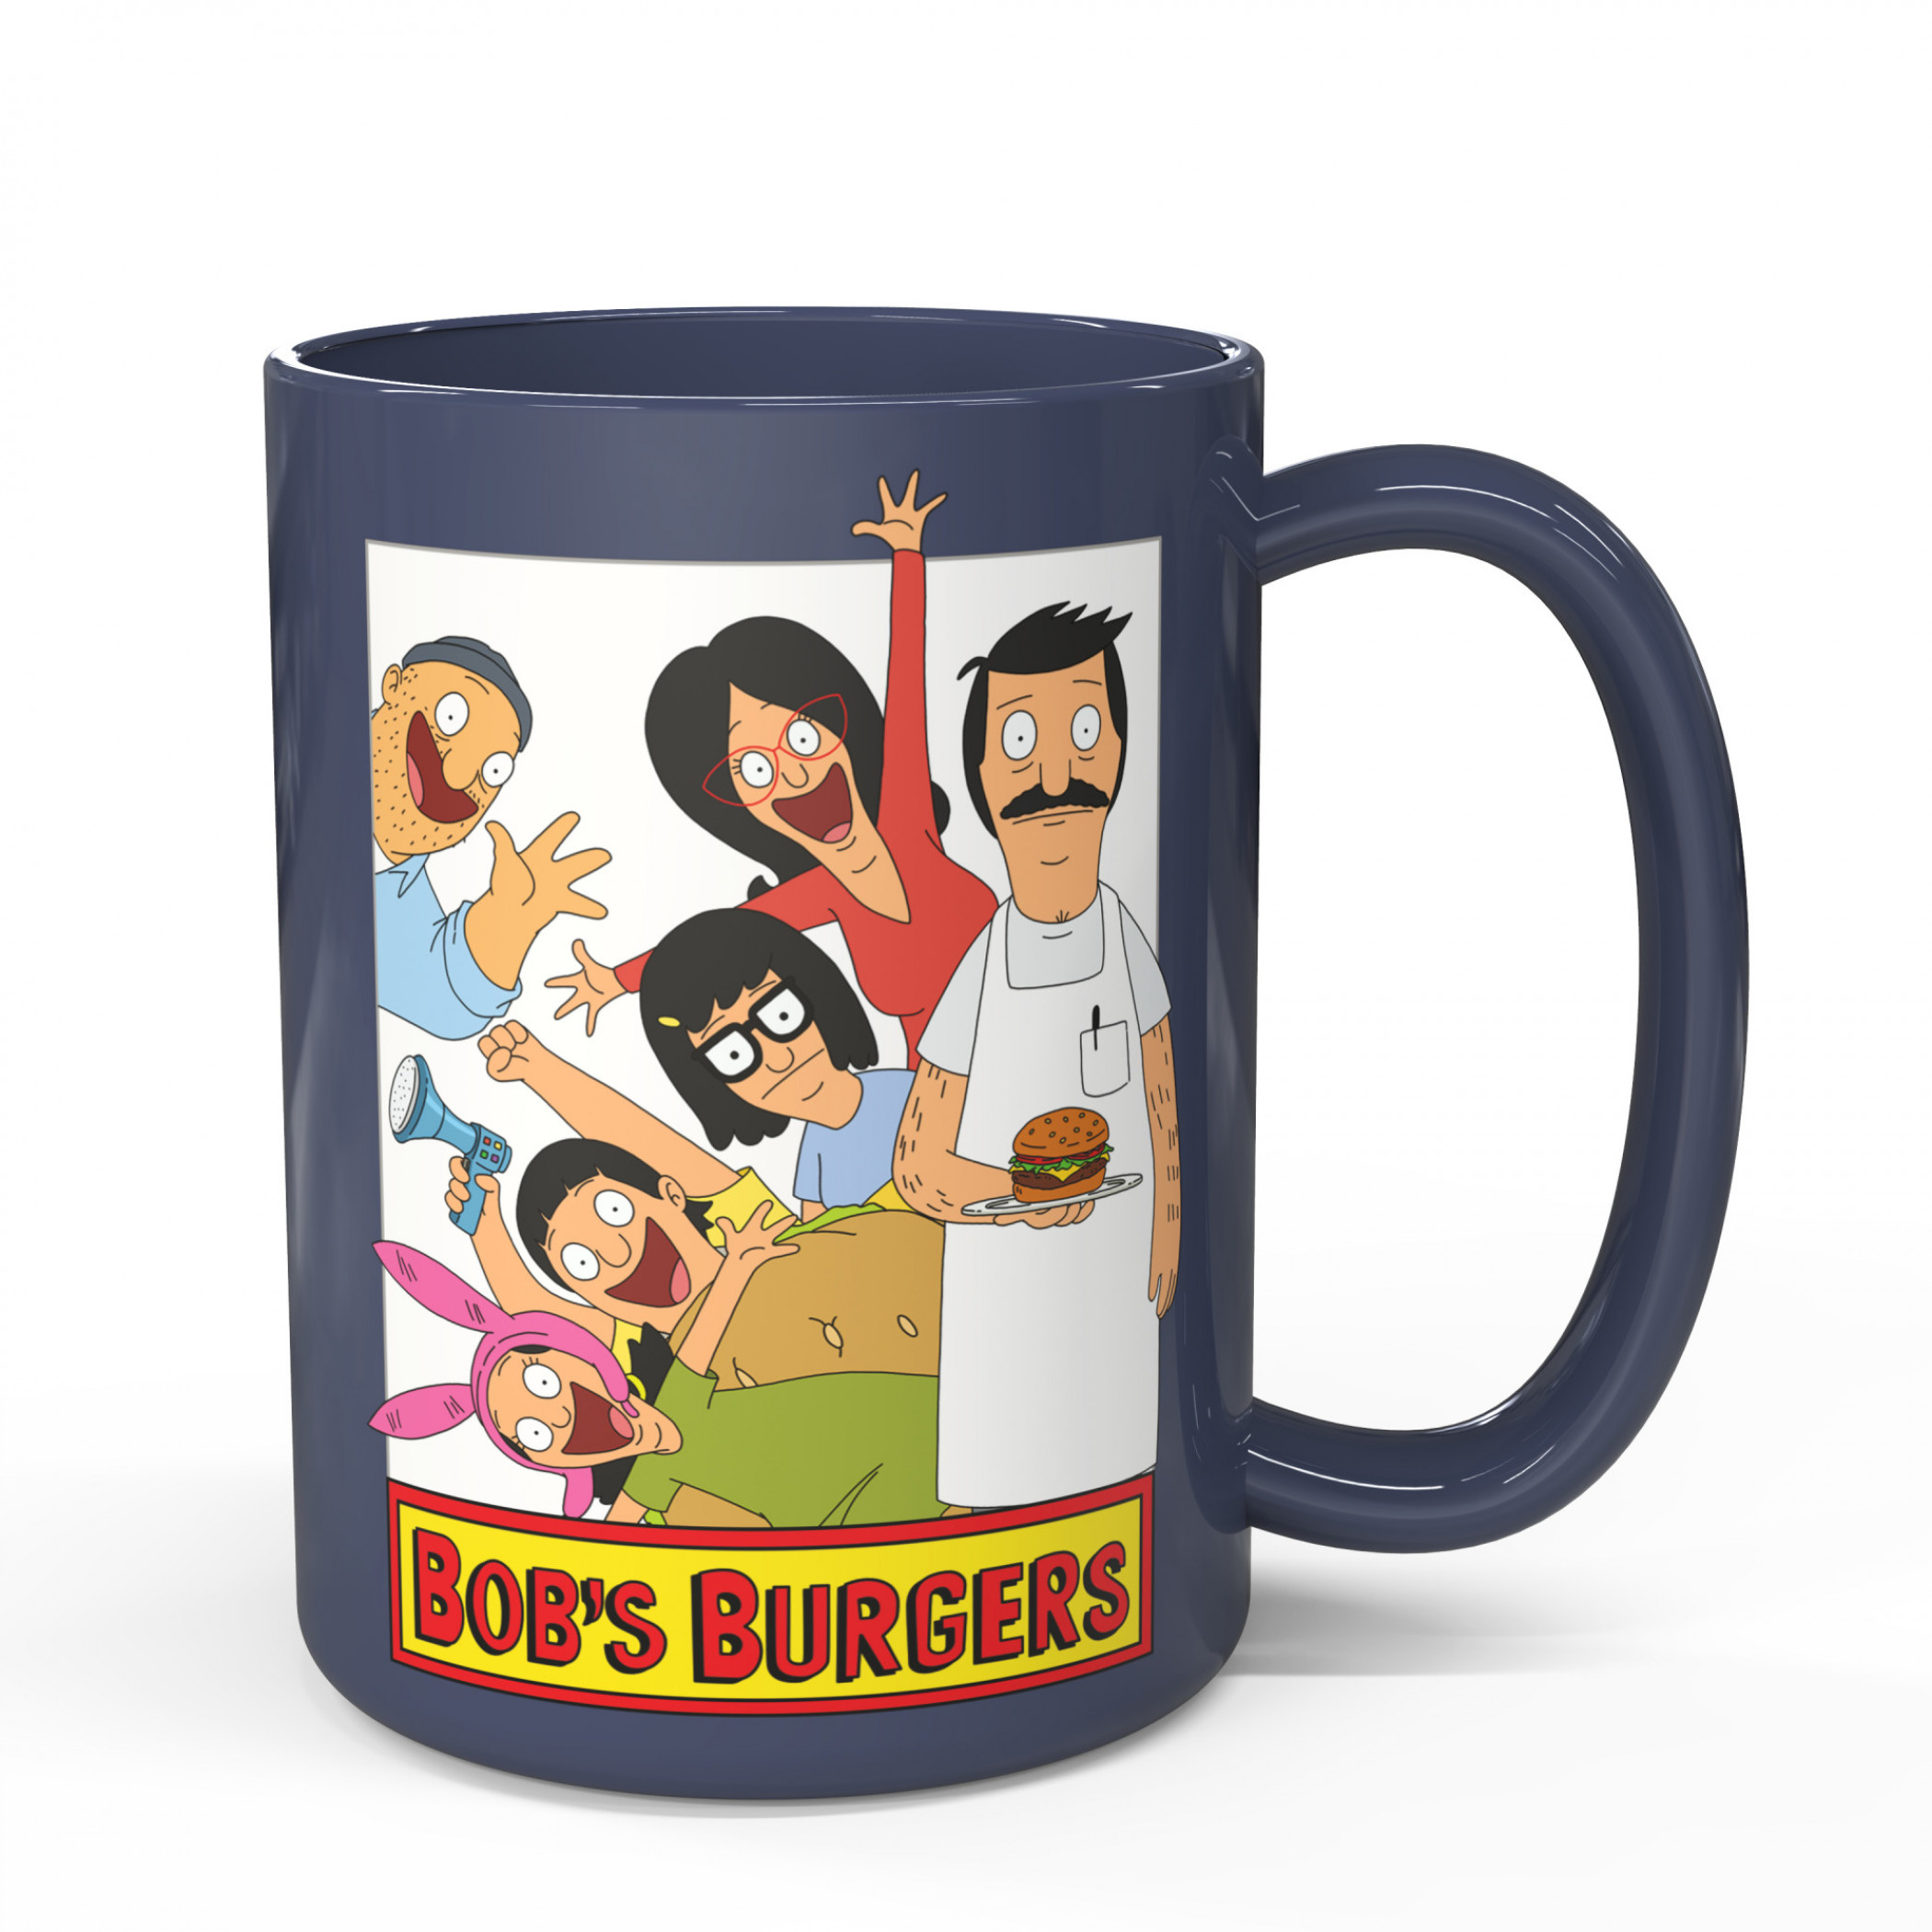 Bob's Burgers You're My Family 15oz Ceramic Mug